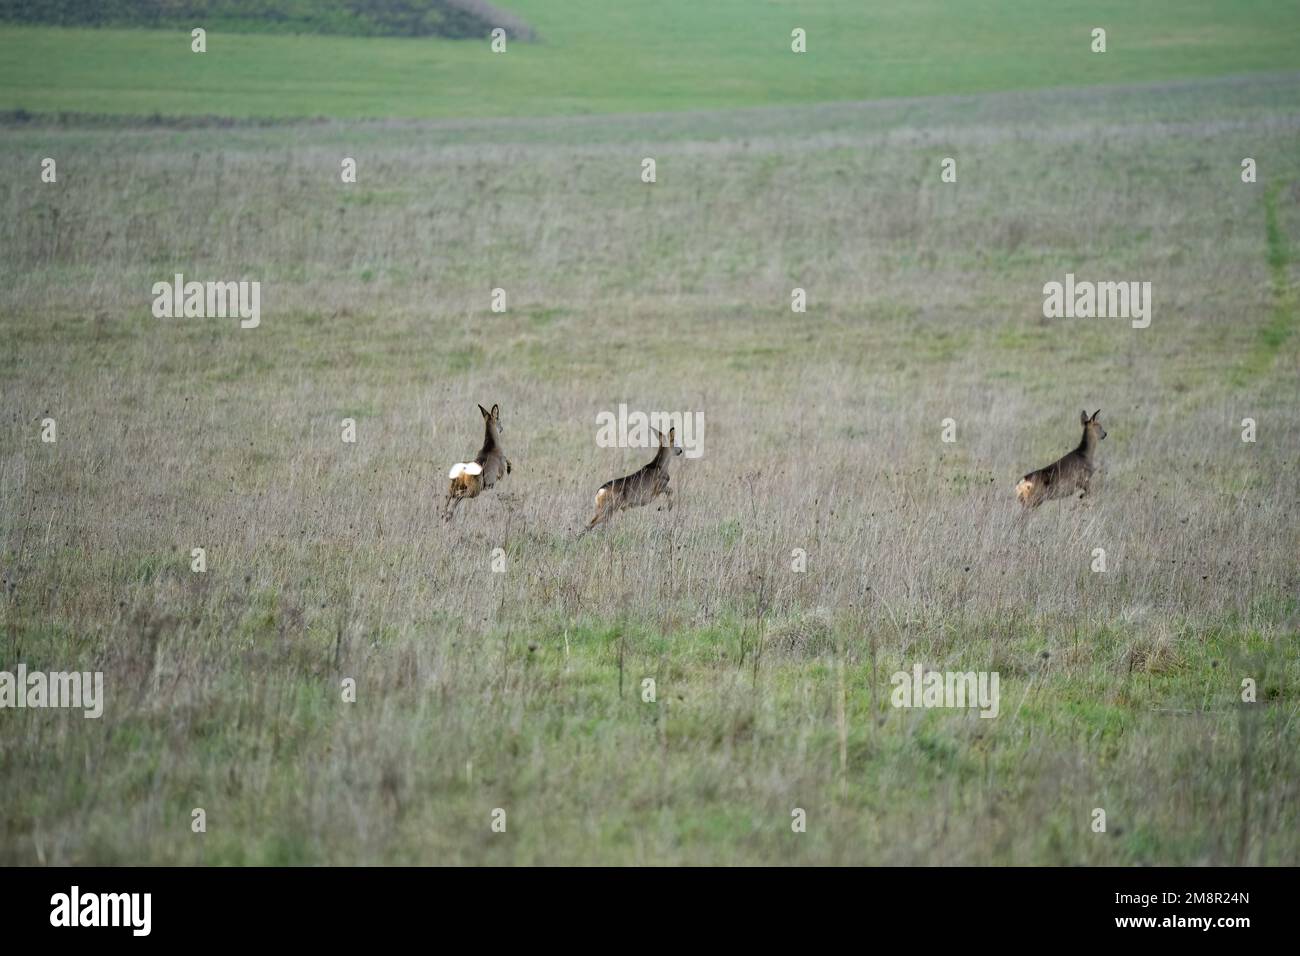 herd of Wild Roe Deer (Capreolus capreolus) running acroos grass meadows Stock Photo